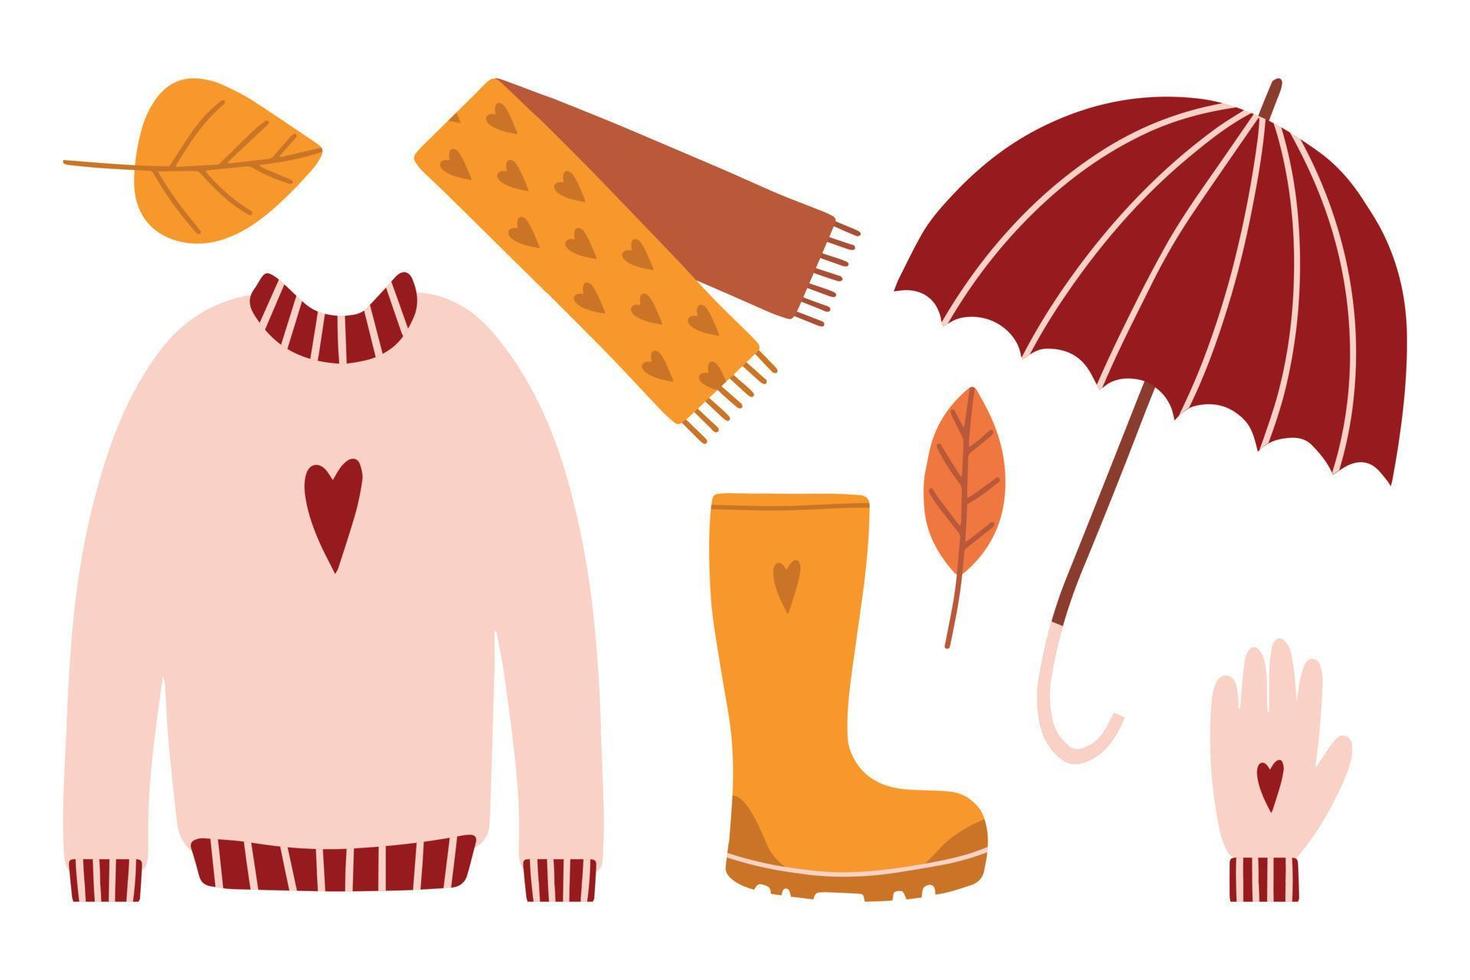 ilustração desenhada à mão de lenço de moda, suéter, arvoredo, bota e guarda-chuva. elemento isolado no fundo branco. roupas de outono. vetor